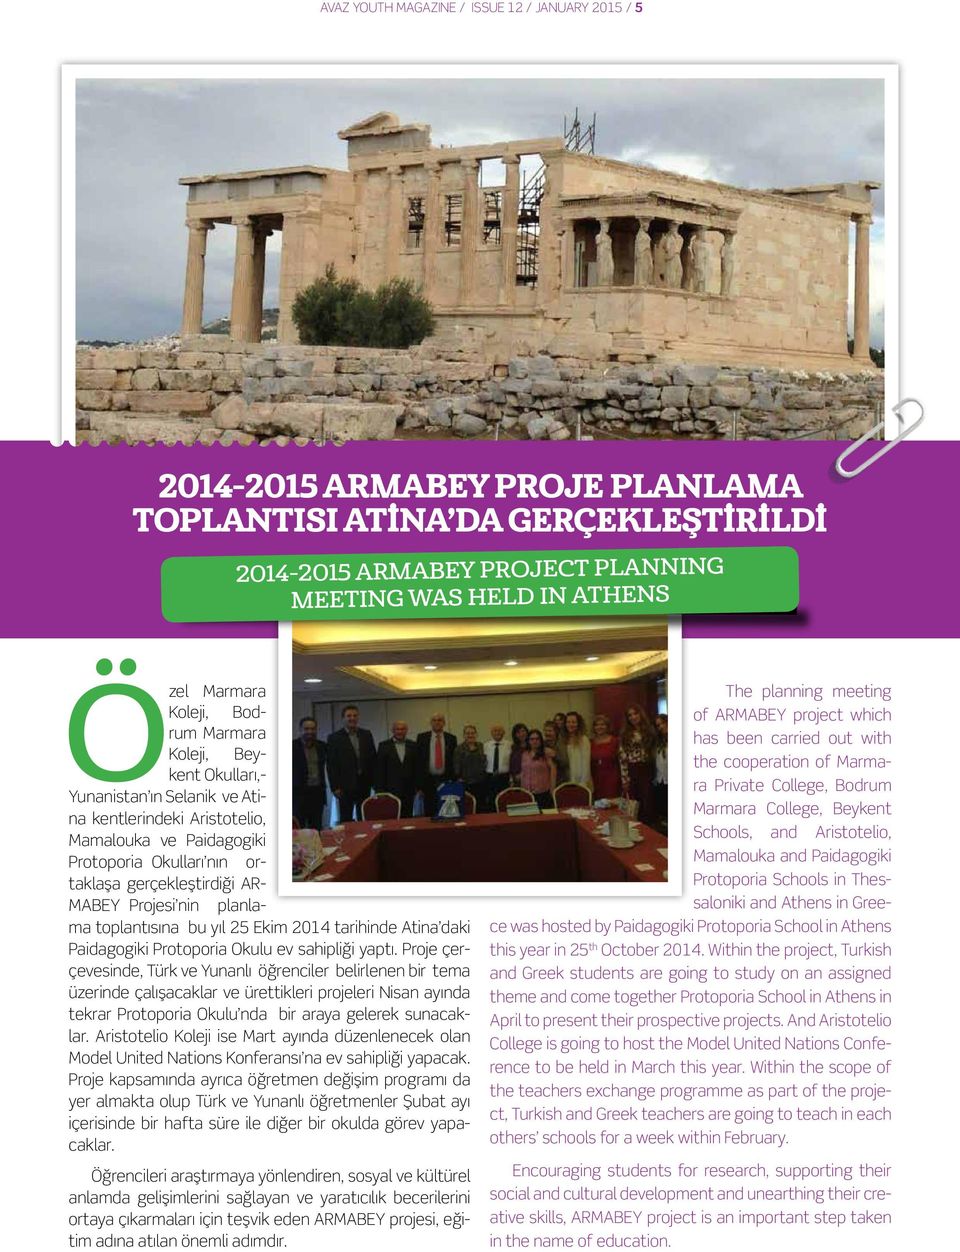 Projesi nin planlama toplantısına bu yıl 25 Ekim 2014 tarihinde Atina daki Paidagogiki Protoporia Okulu ev sahipliği yaptı.